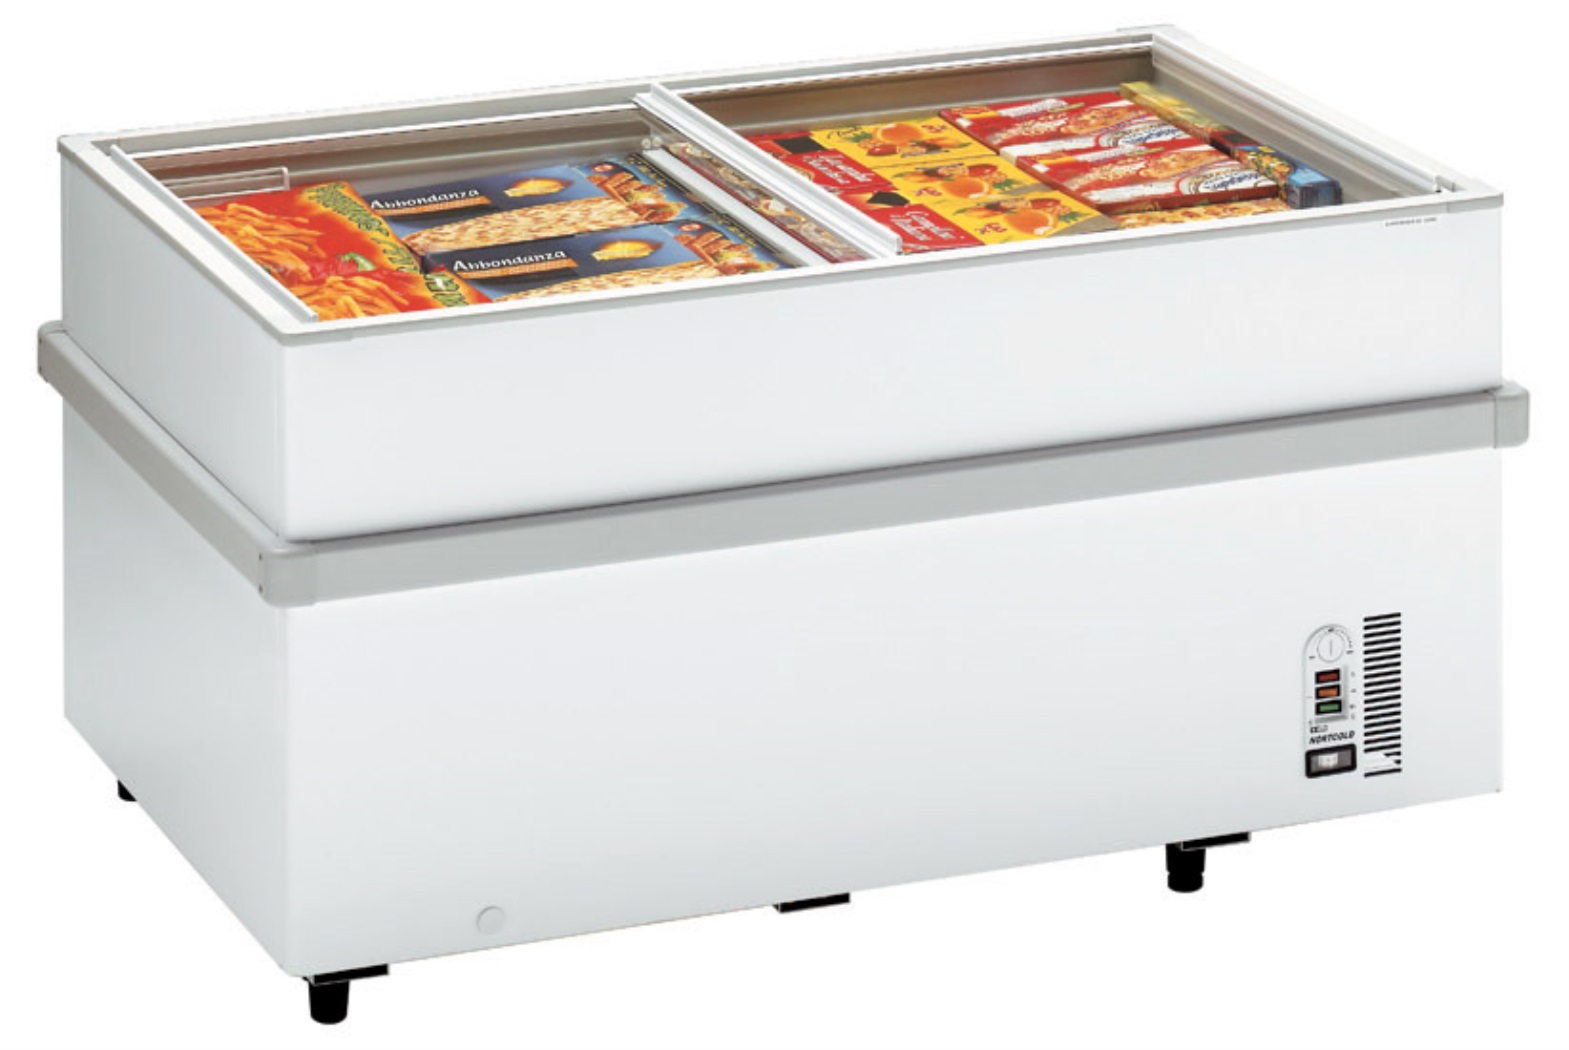 Arcones congeladores Benavent: Todos los modelos disponibles en  Electropremium